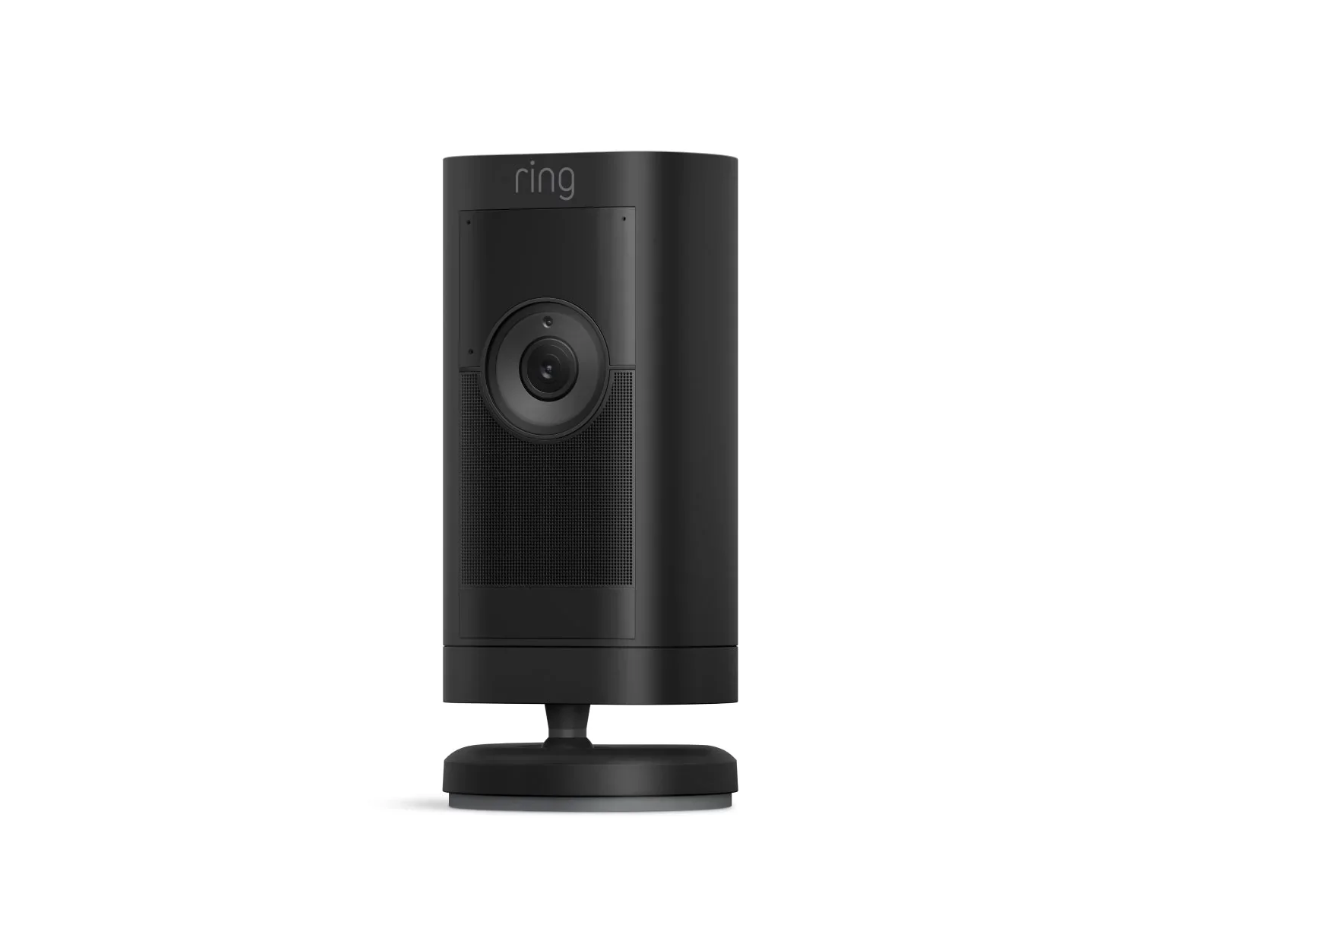 Ring wprowadza na rynek Stick Up Cam Pro, kamerę z technologią wykrywania ruchu 3D